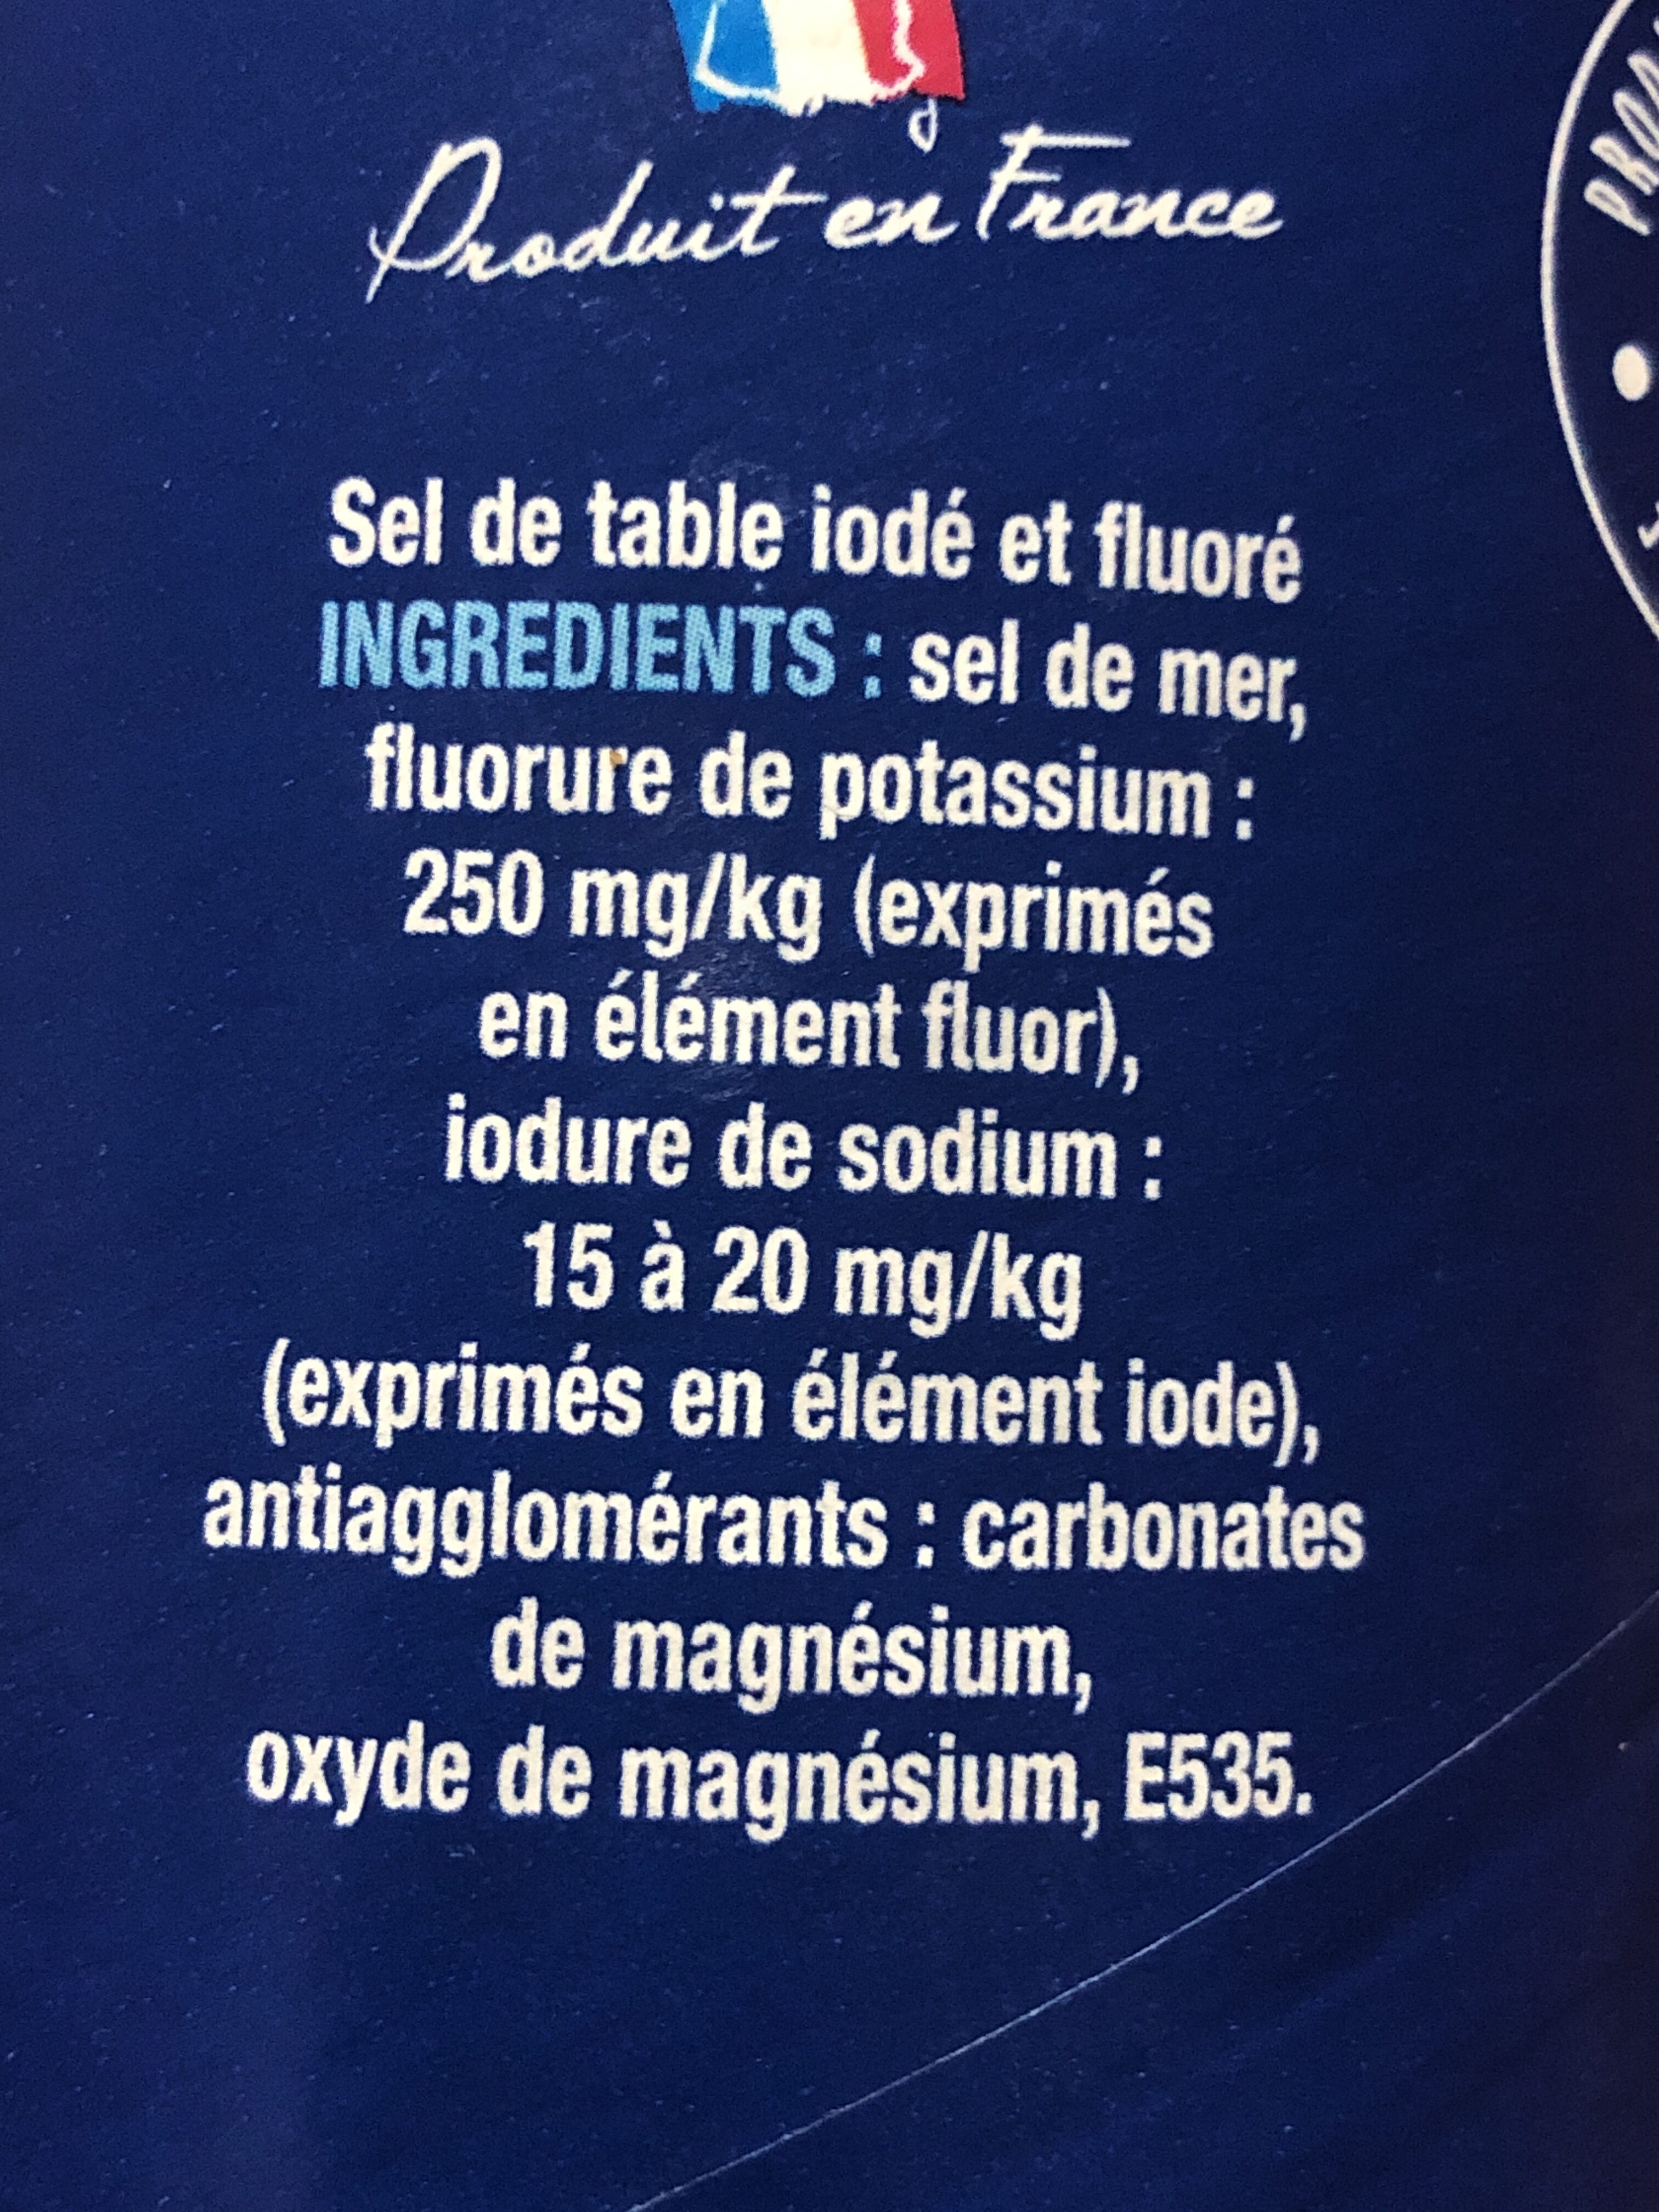 Sel fin iodé et fluoré - Ingredients - fr